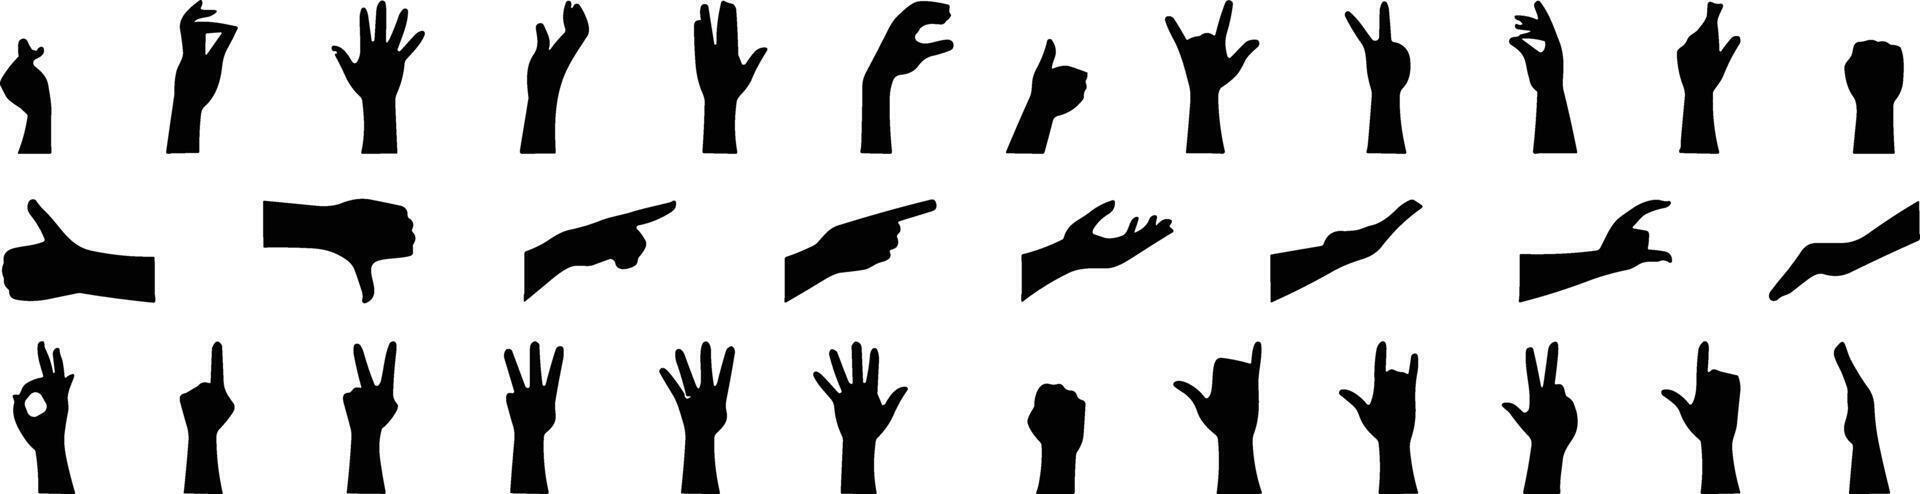 hand- gebaar icoon set. allemaal type van hand- emoji's, gebaren, stickers, emoticons vlak vector illustratie symbolen. handen, handdrukken, spier, vinger, vuist, richting, Leuk vinden, in tegenstelling tot, vingers verzameling